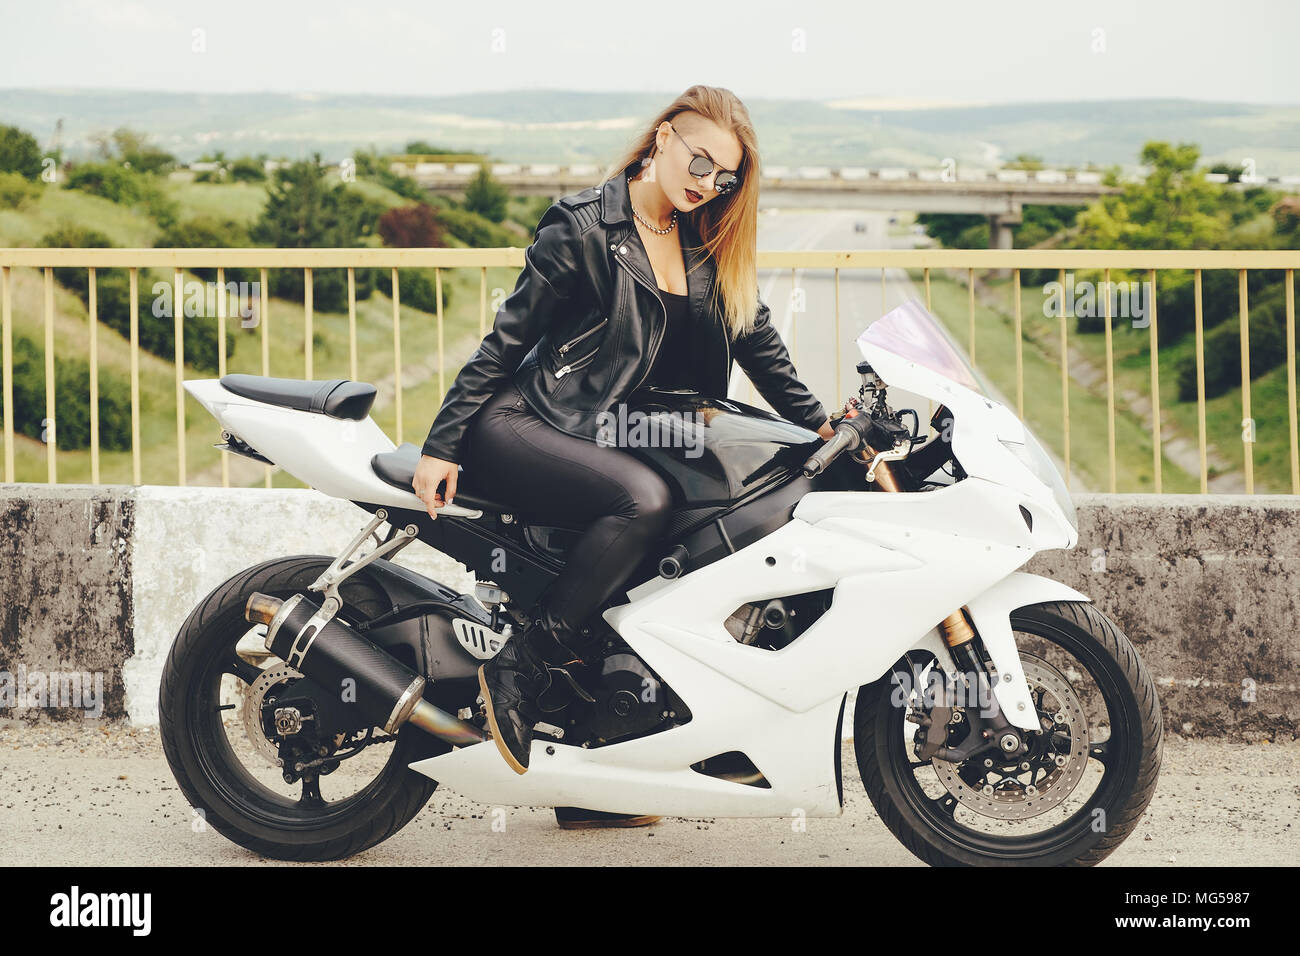 Belle femme avec des lunettes de conduite sur des moto Photo Stock - Alamy